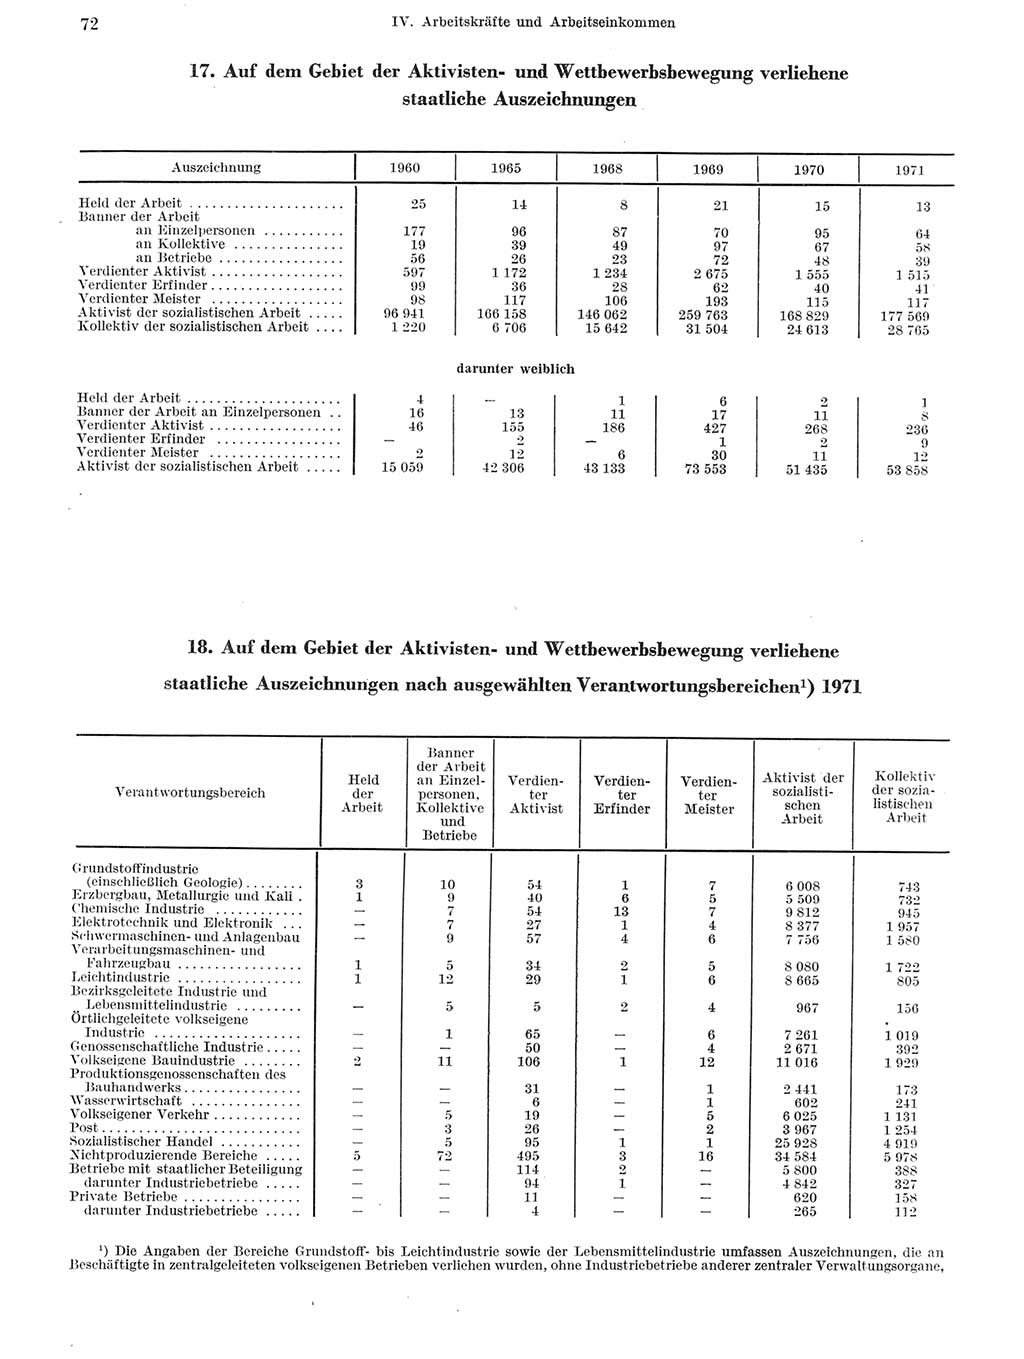 Statistisches Jahrbuch der Deutschen Demokratischen Republik (DDR) 1972, Seite 72 (Stat. Jb. DDR 1972, S. 72)